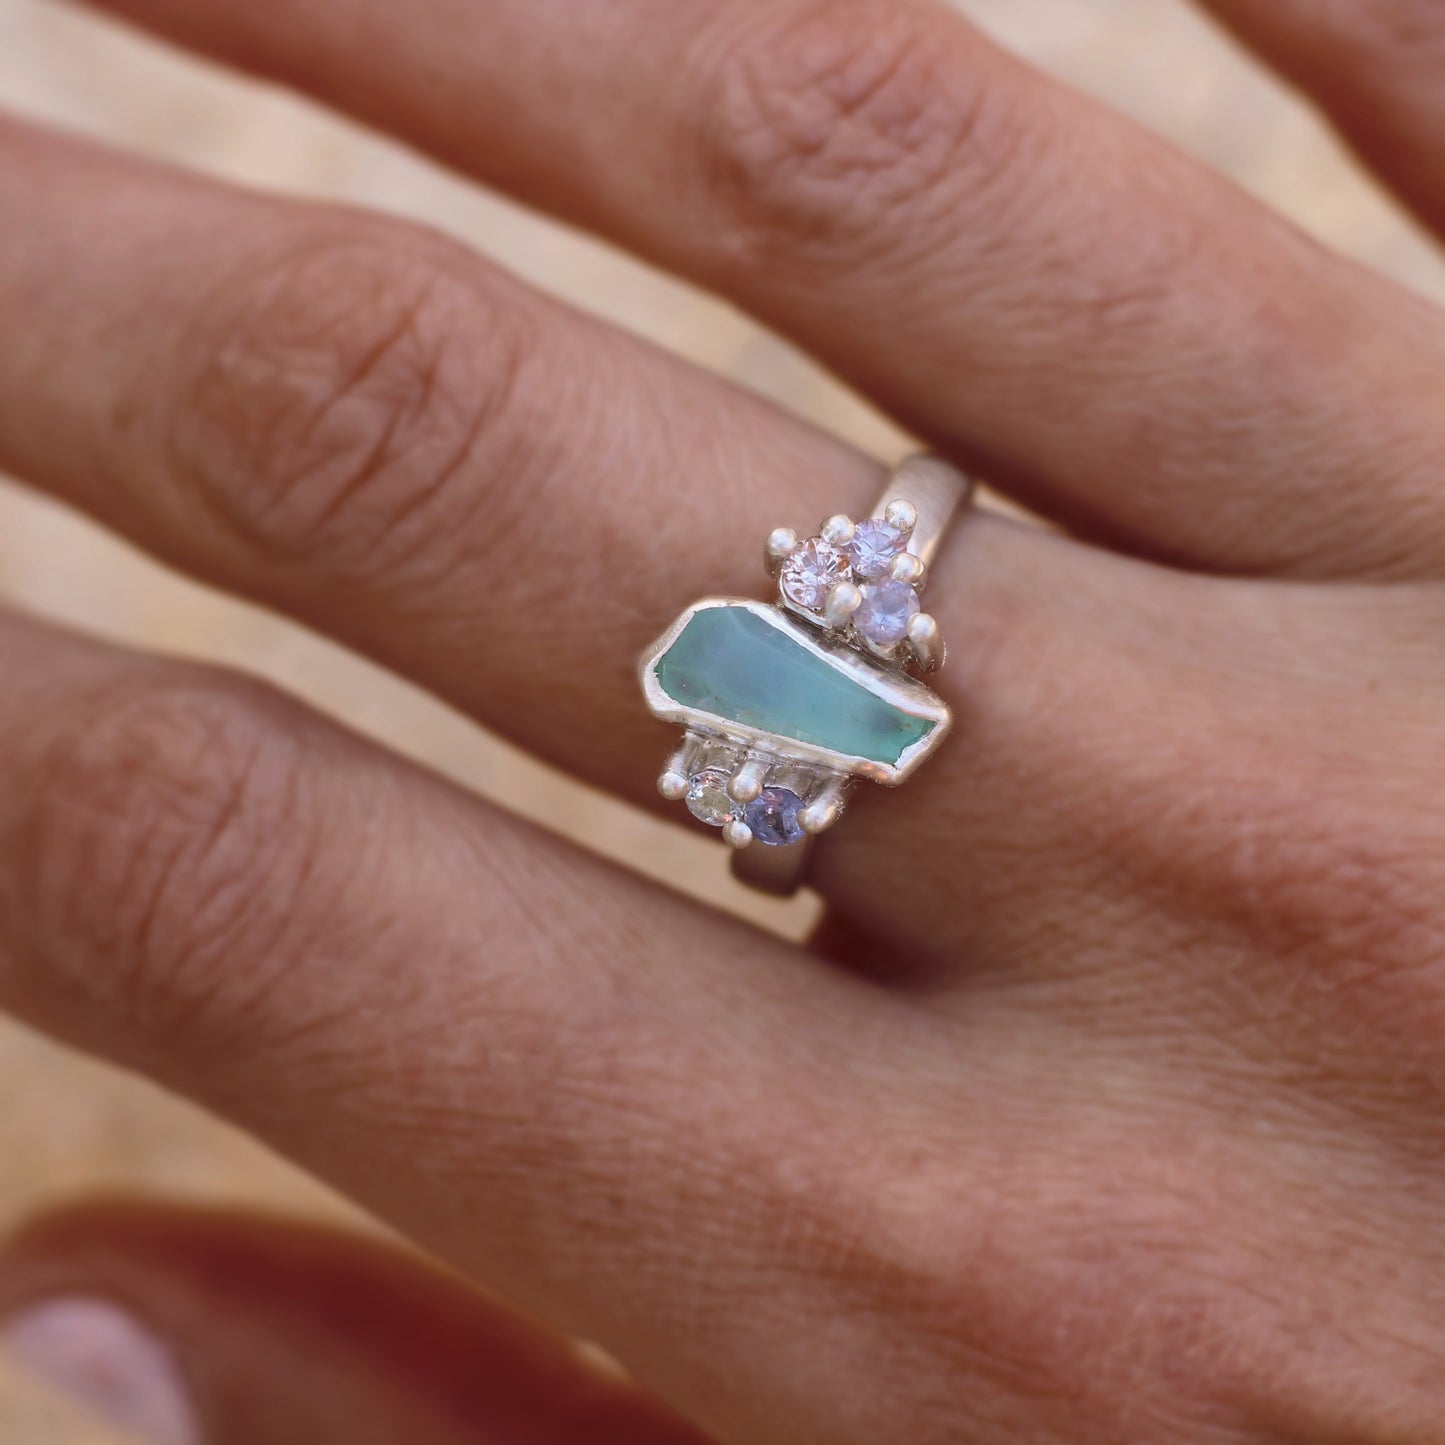 Mermaid's Treasure - Peruvian opal ring